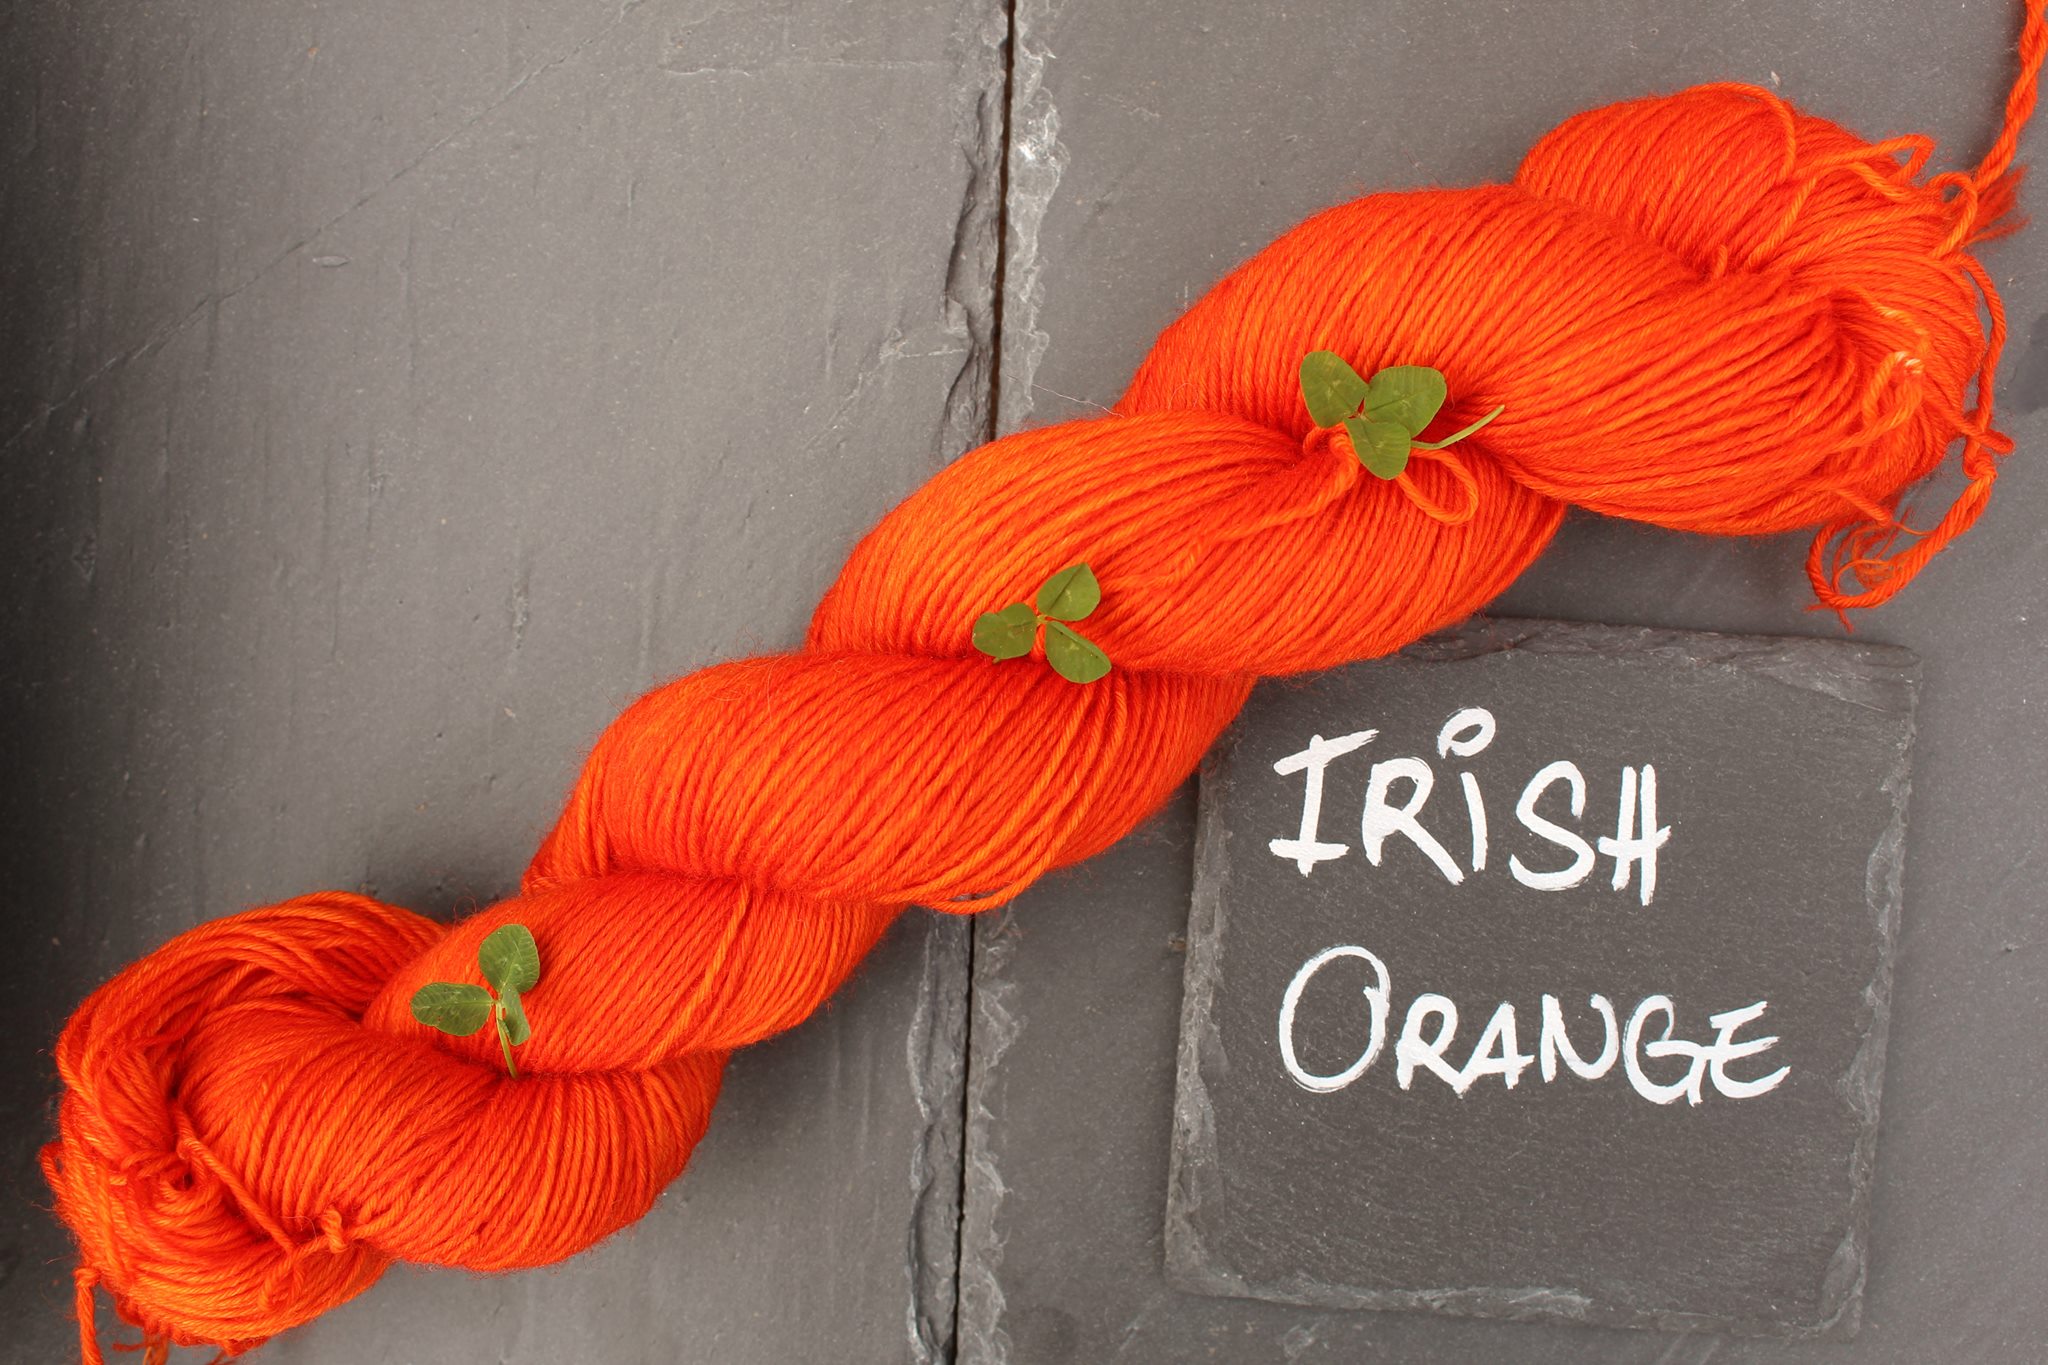 Irish Orange